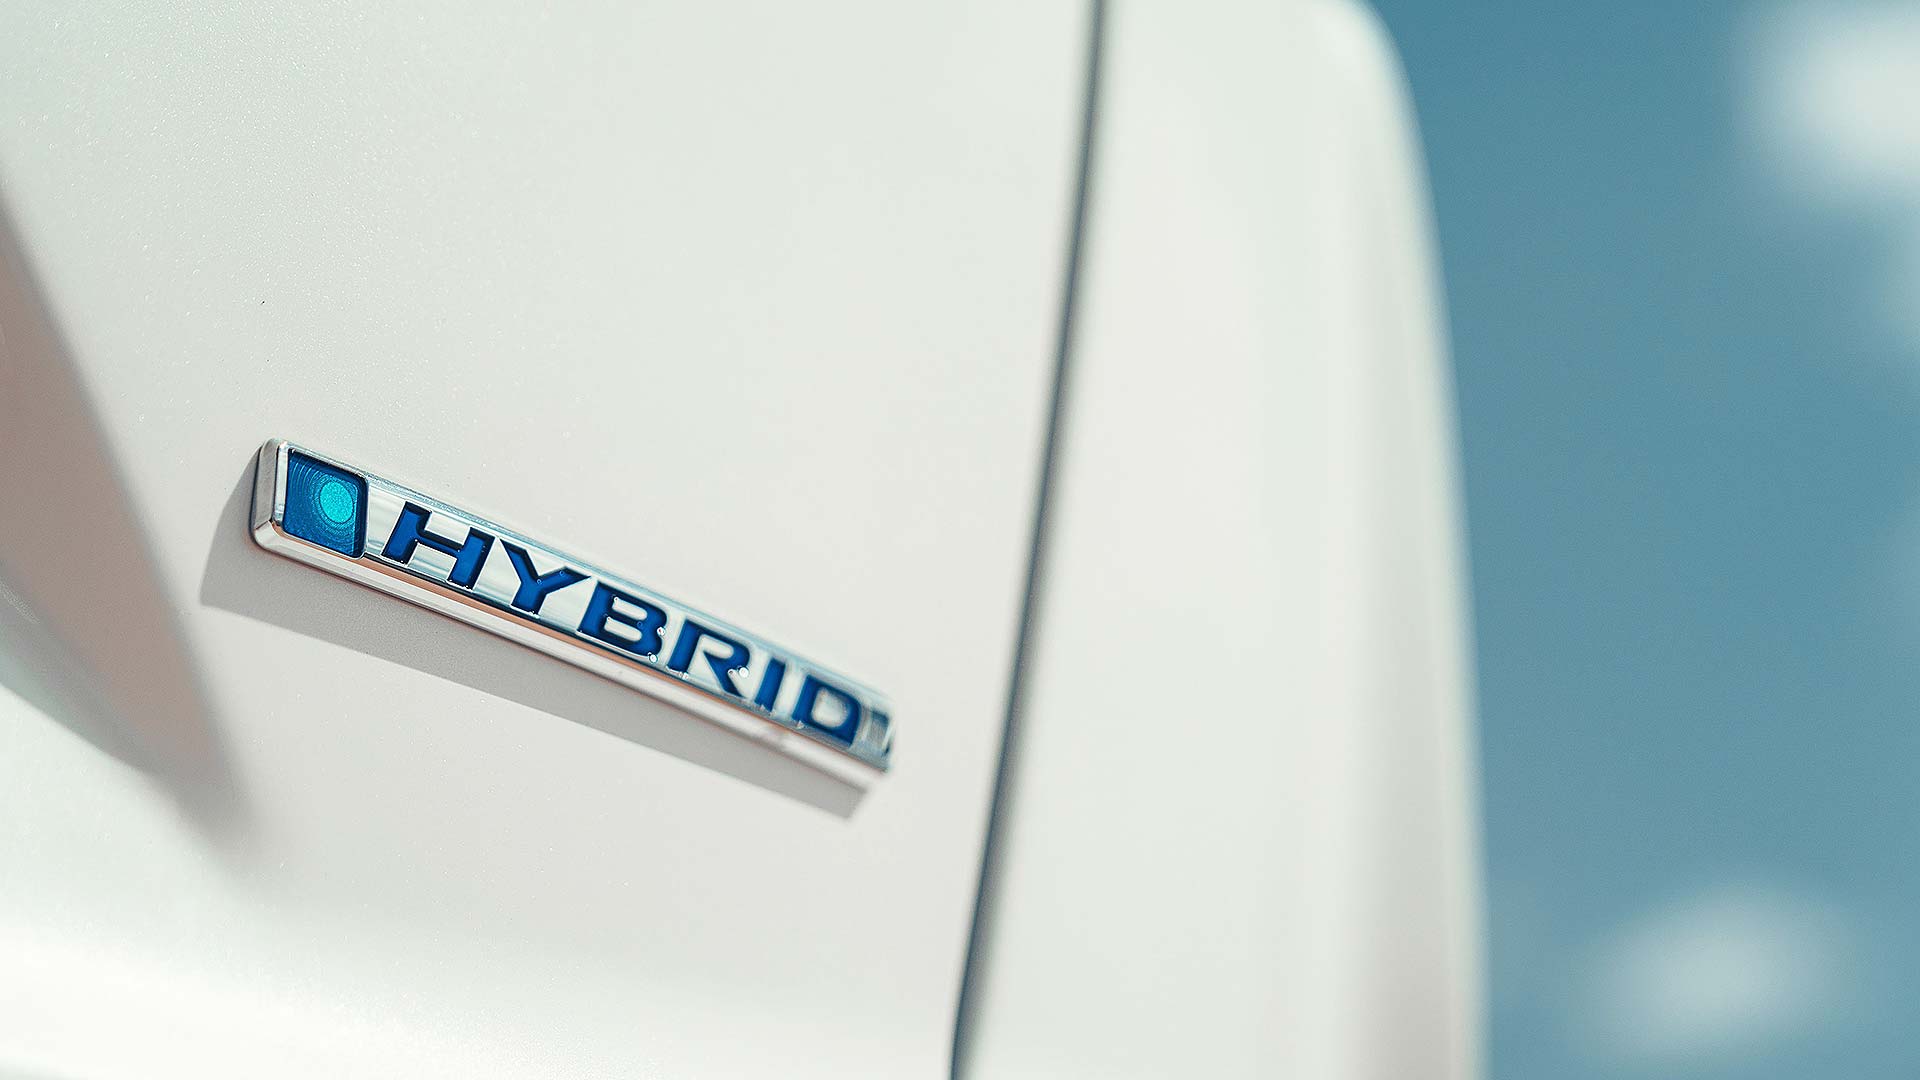 Honda Hybrid